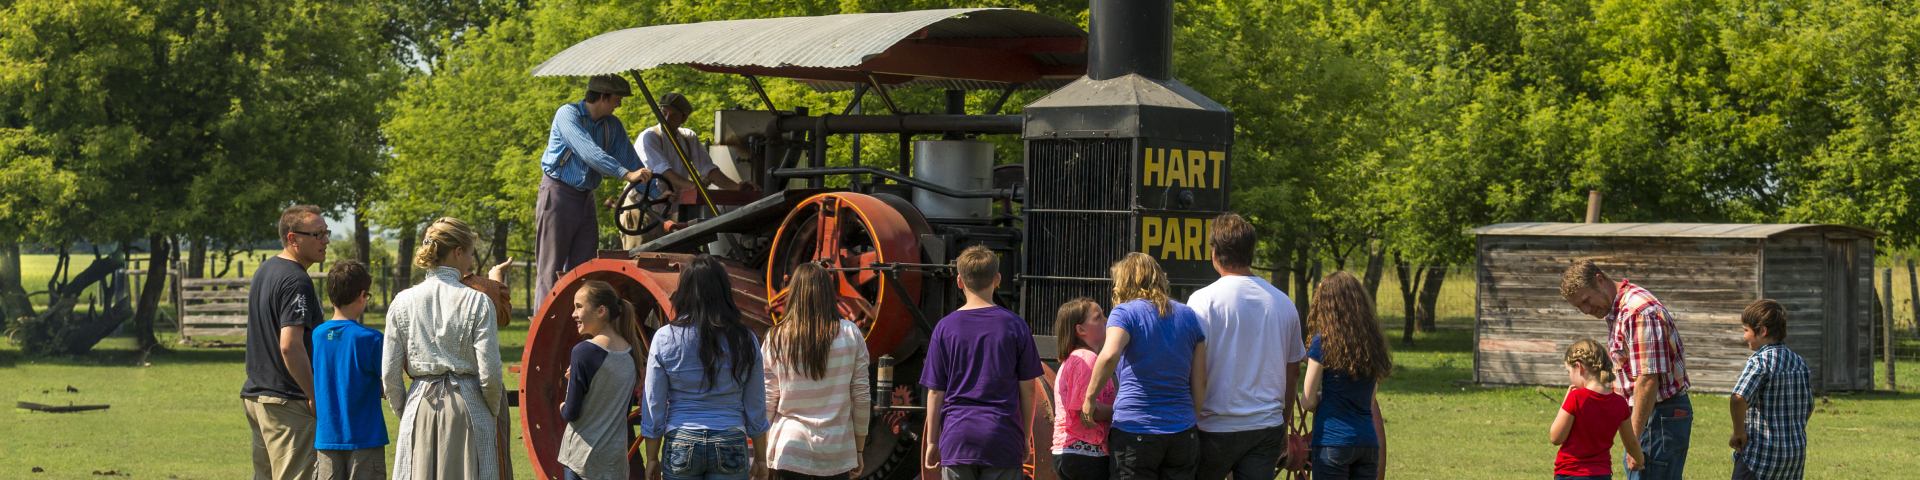 Visiteurs assistant à une démonstration du fonctionnement du tracteur Hart-Parr par des interprètes en costume d'époque au lieu historique national du Homestead-Motherwell 